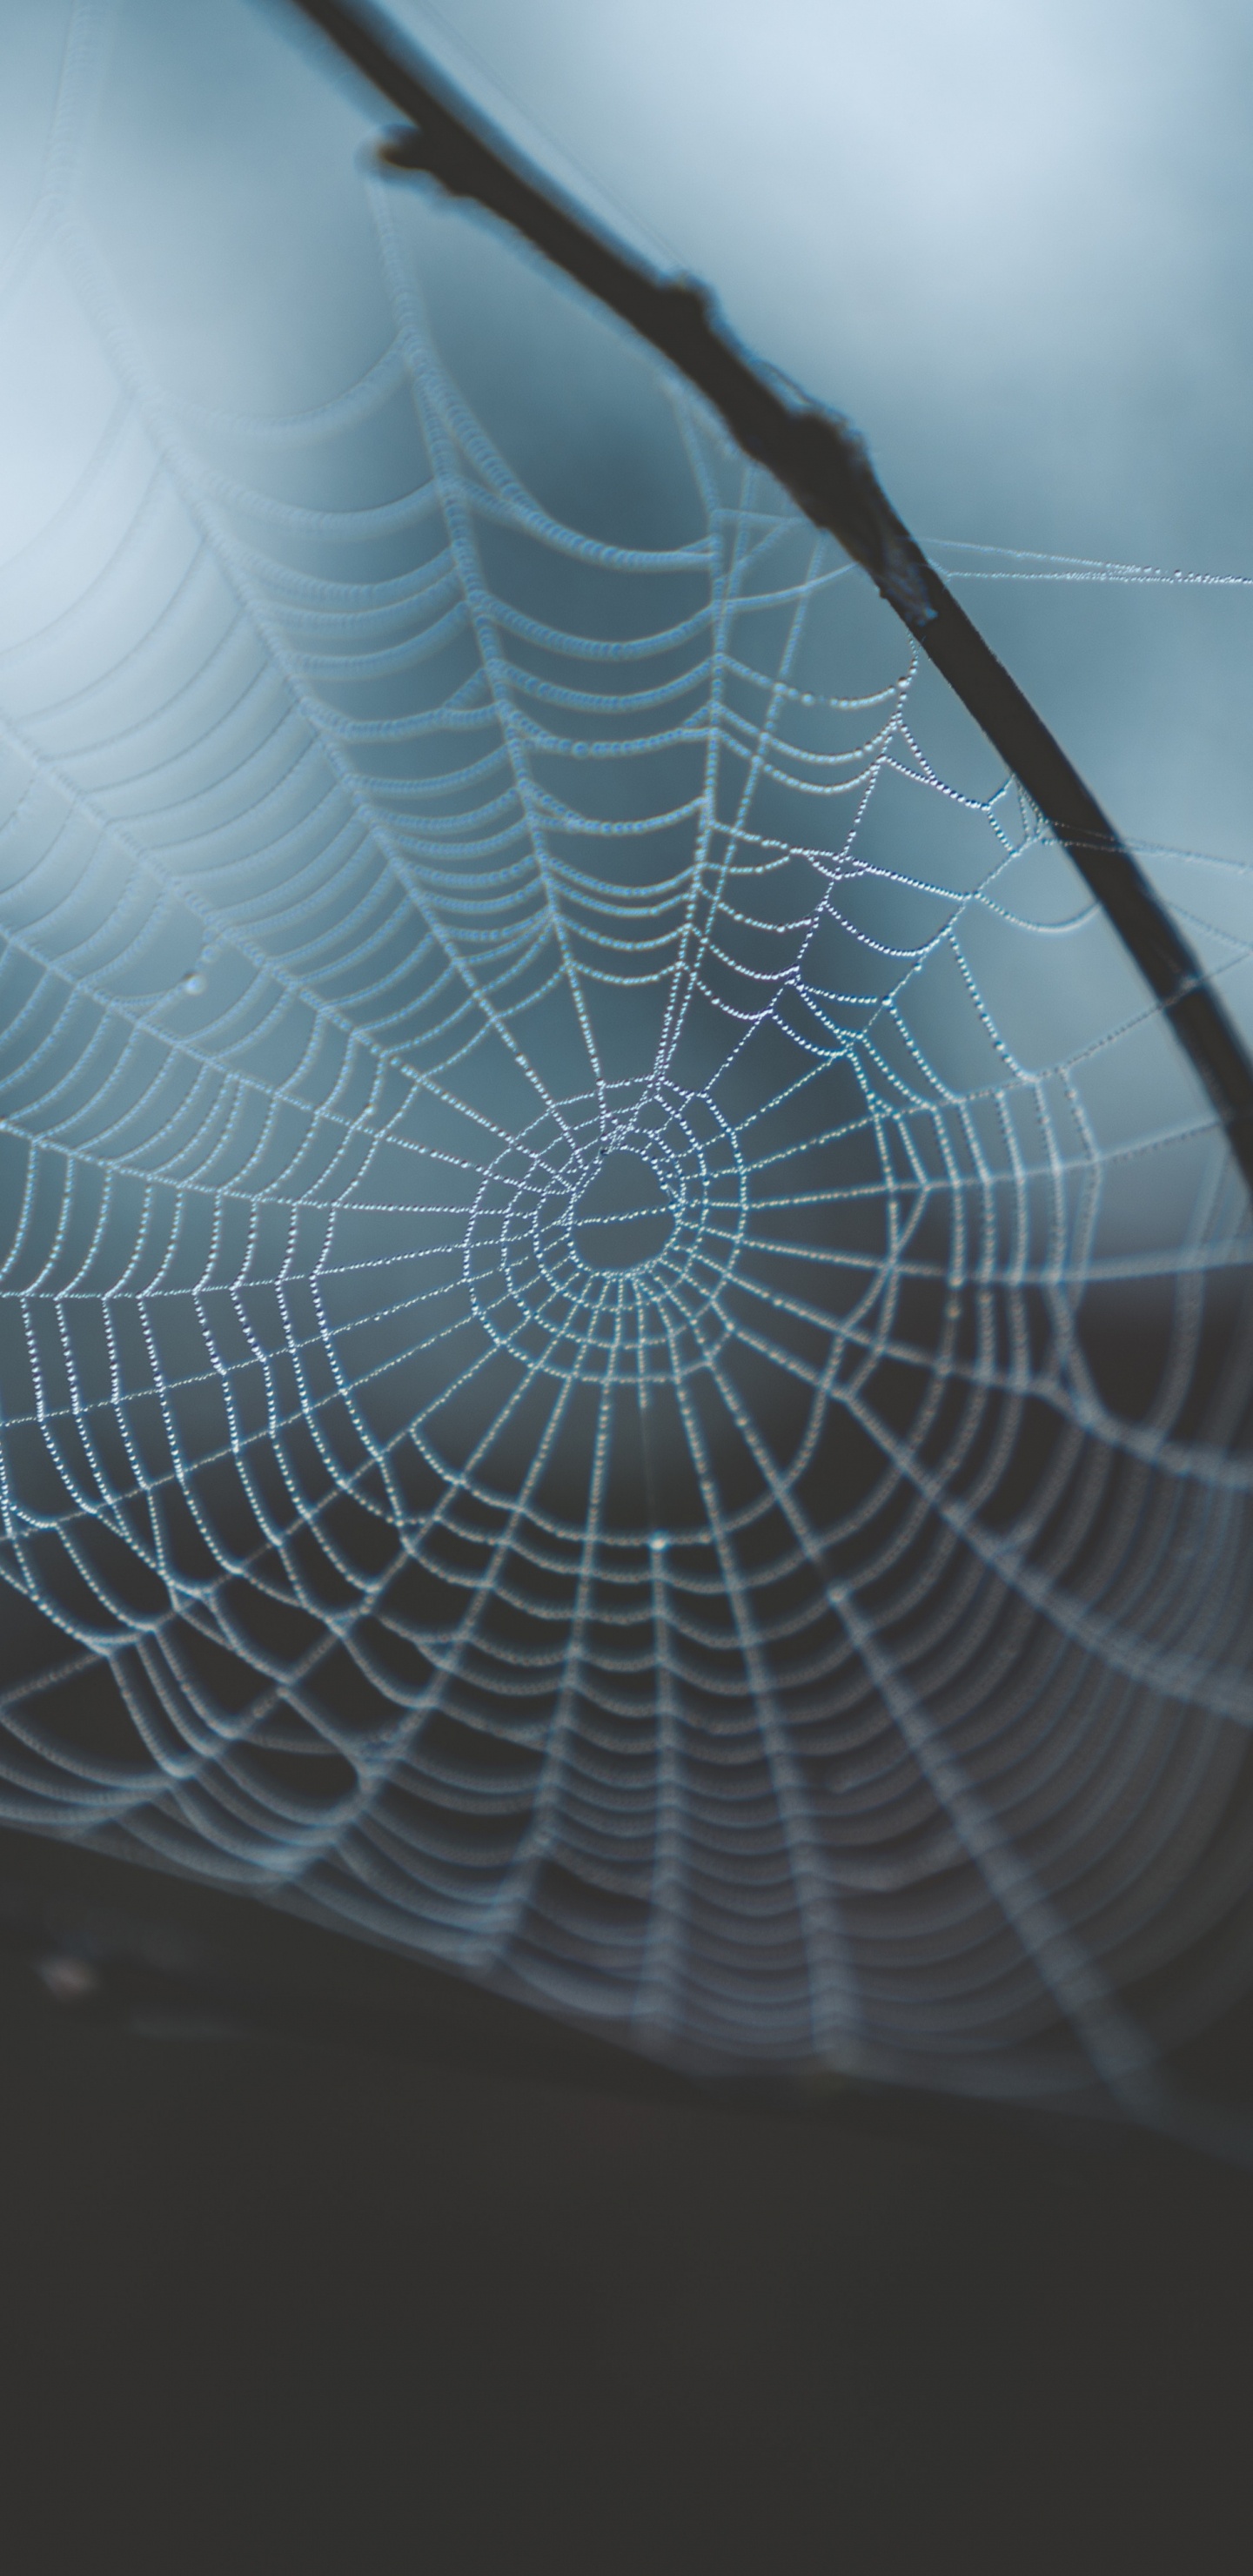 蜘蛛网, 早上, 光, 透明材料, 天空 壁纸 1440x2960 允许